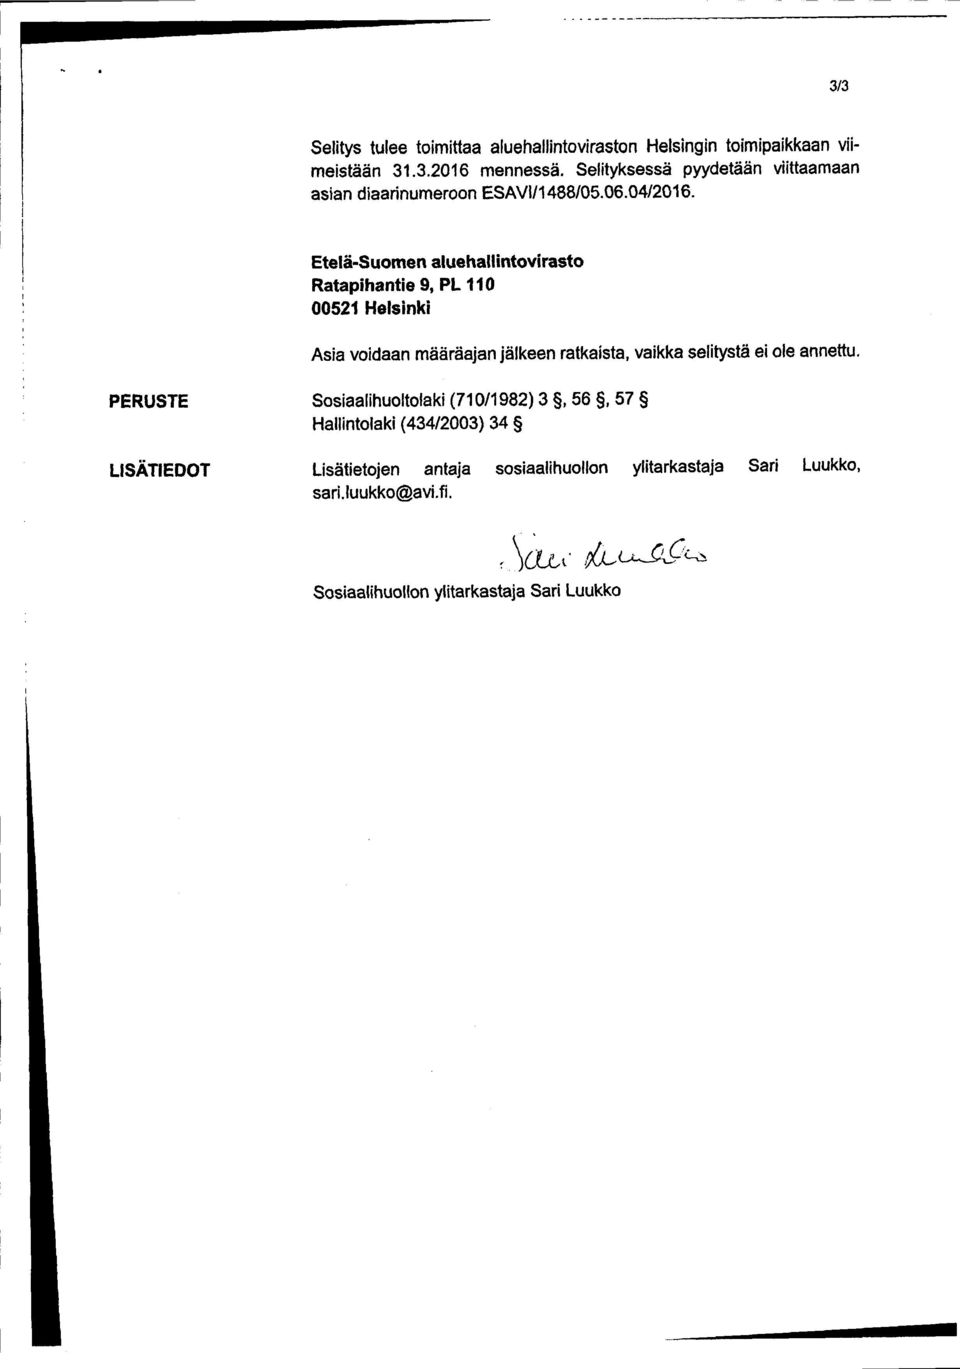 Etelä -Suomen aluehallintovirasto Ratapihantie 9, PL 110 00521 Helsinki Asia voidaan määräajan jälkeen ratkaista, vaikka selitystä ei